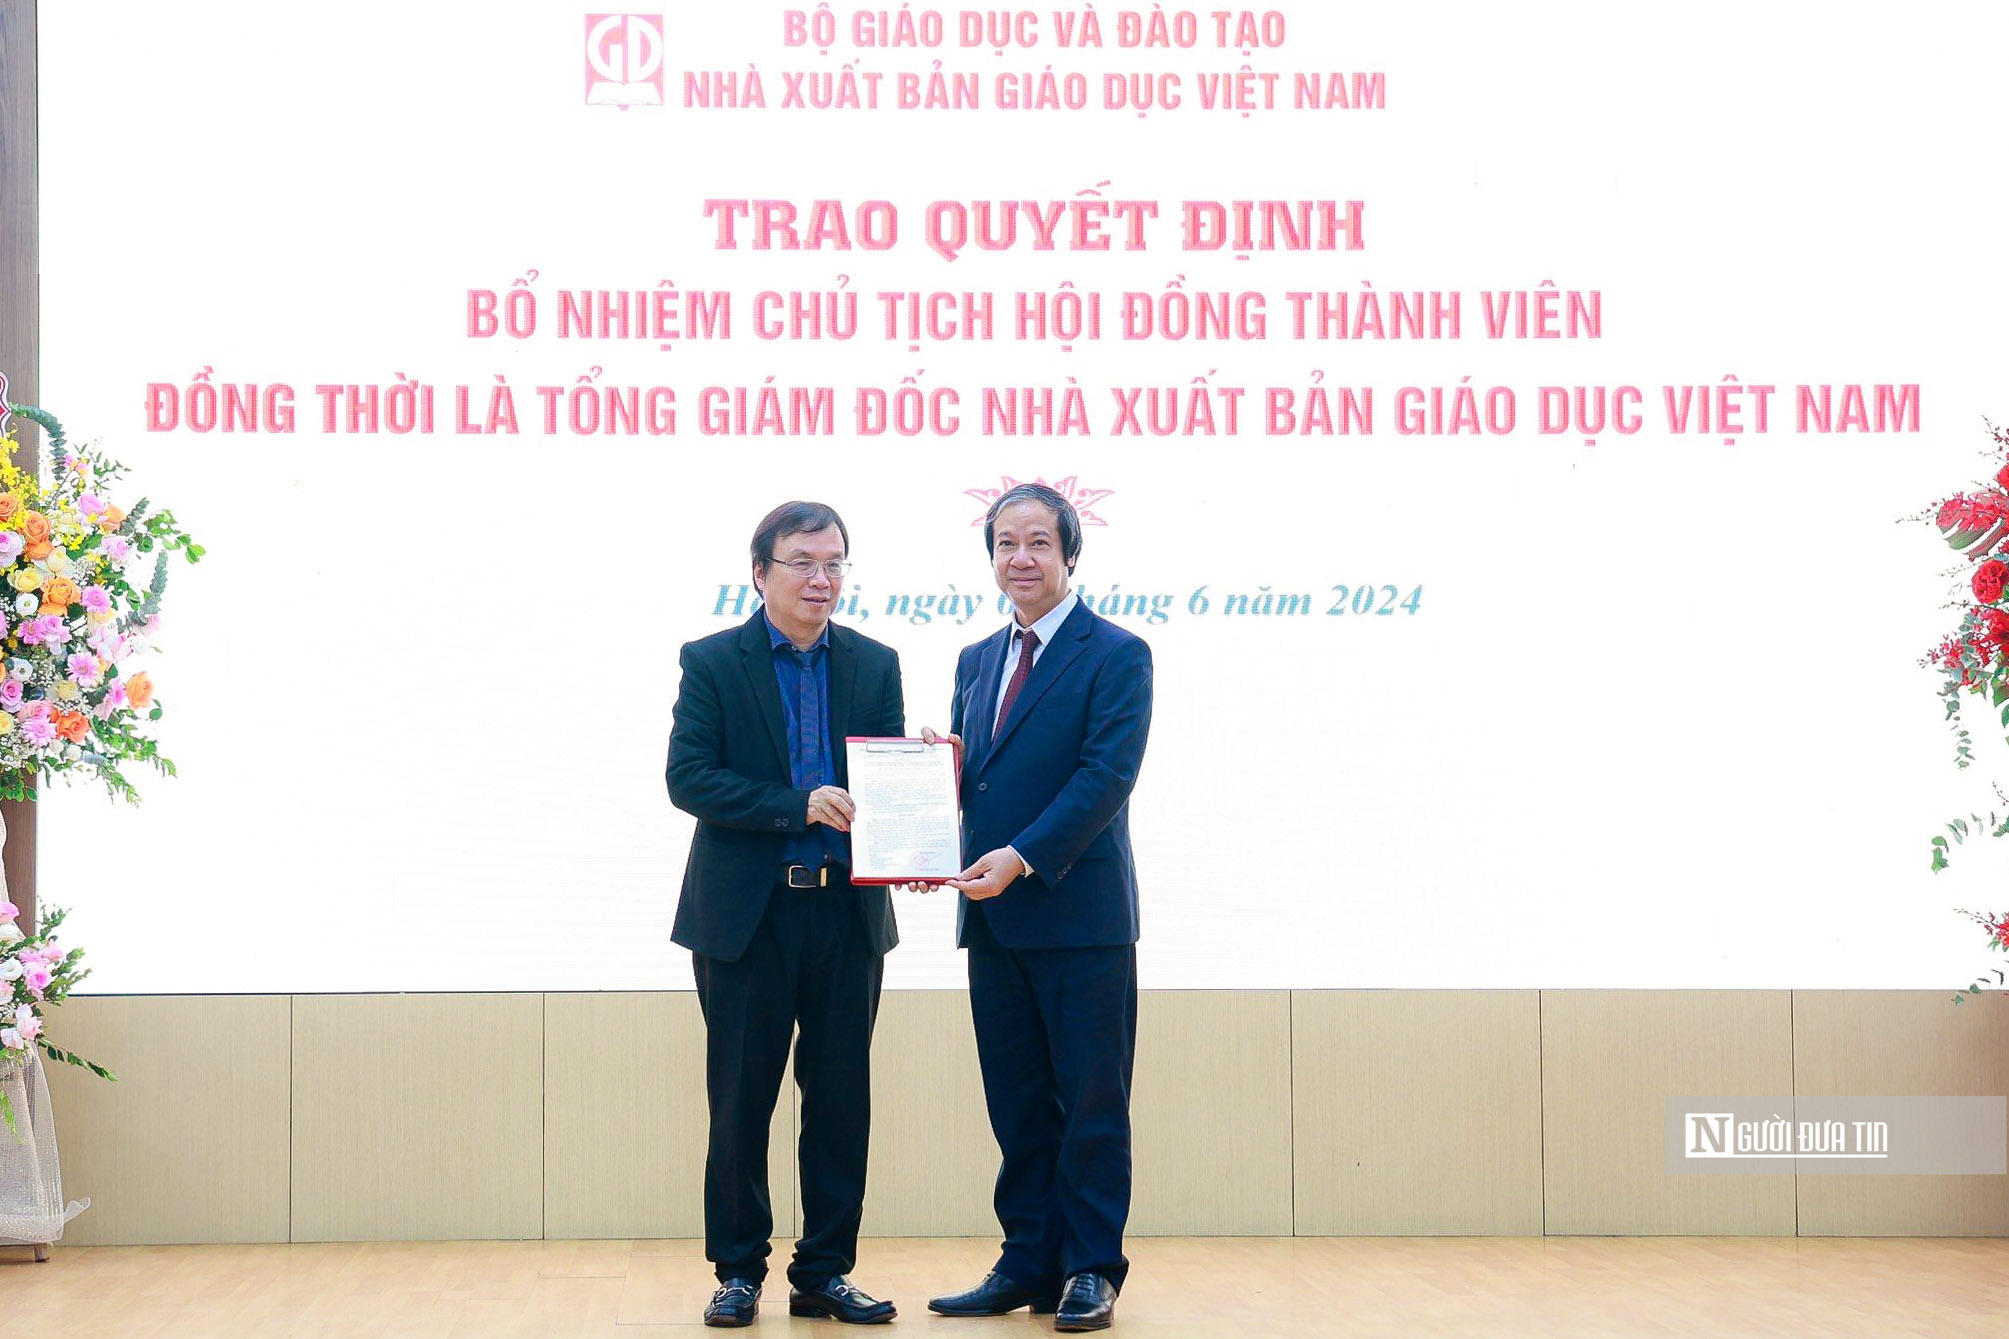 Tiêu điểm - Trao quyết định bổ nhiệm Chủ tịch HĐTV, TGĐ NXB Giáo dục Việt Nam